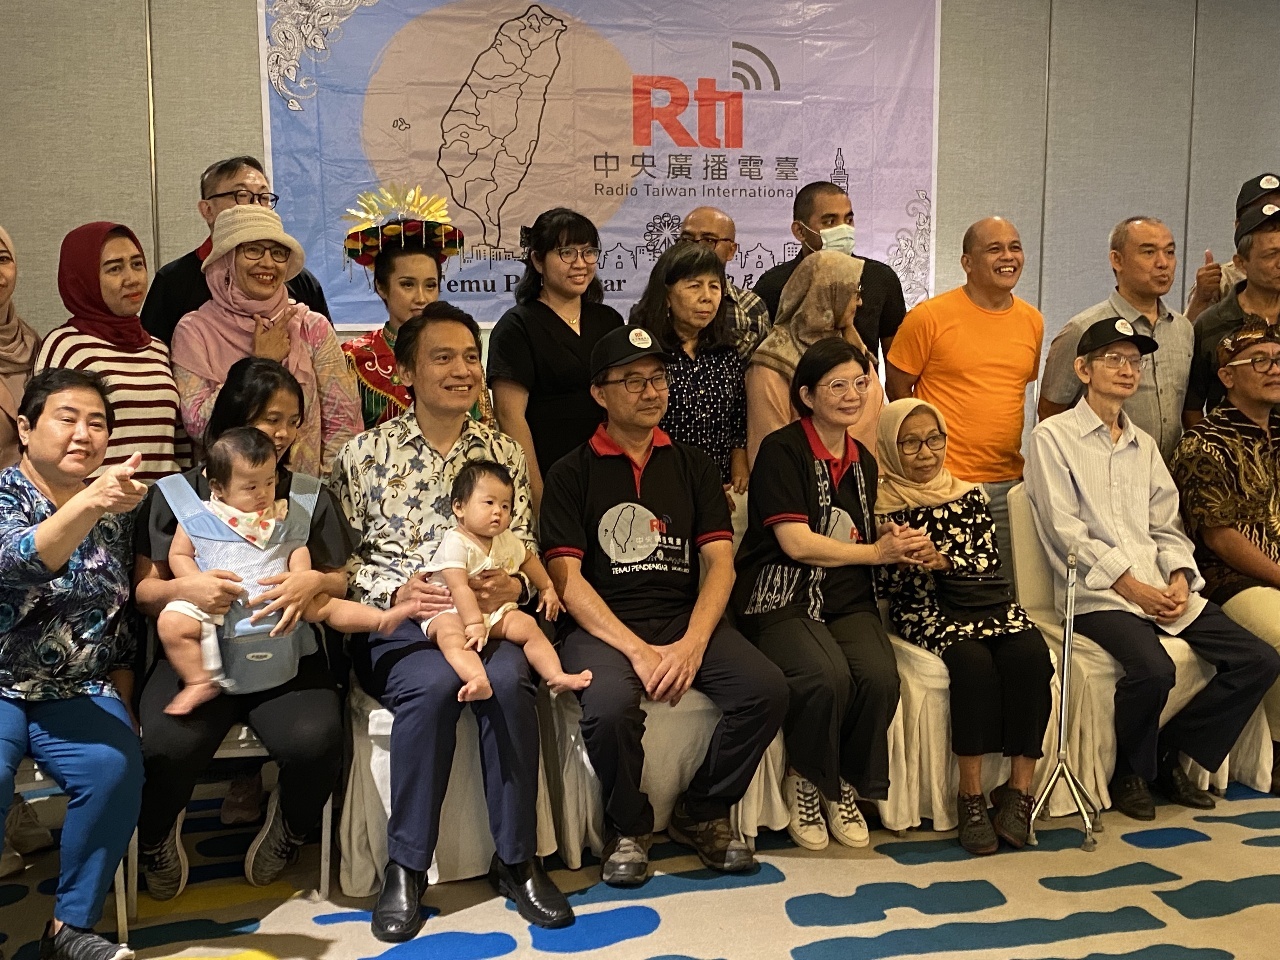 Rti celebra el encuentro con oyentes de Indonesia en Yakarta